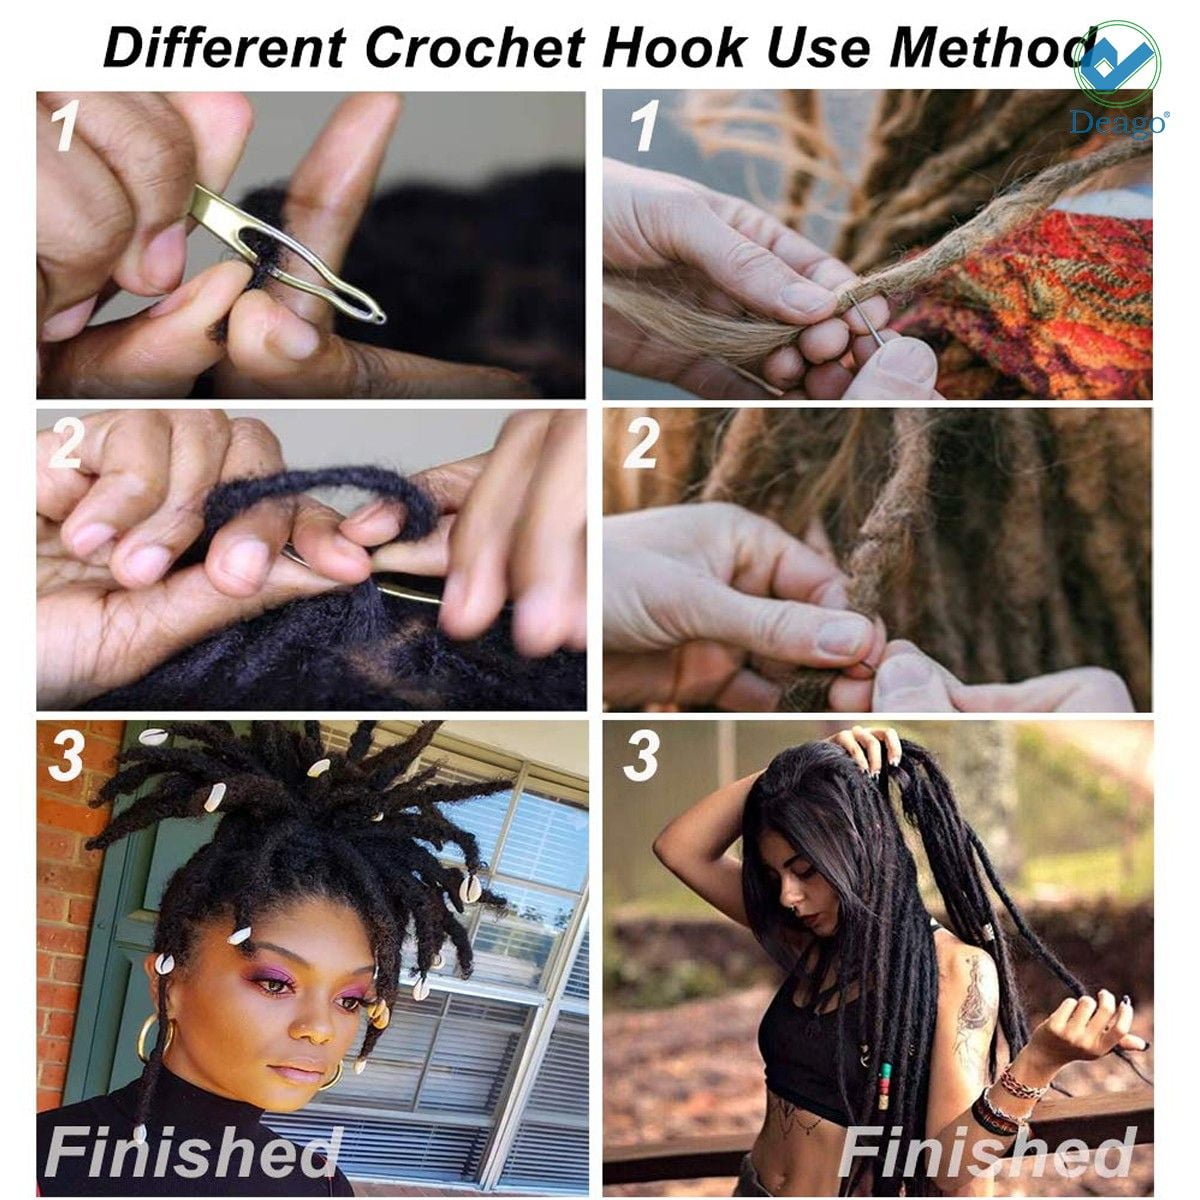 Double crochet hook vs single crochet hook #locs #dreads